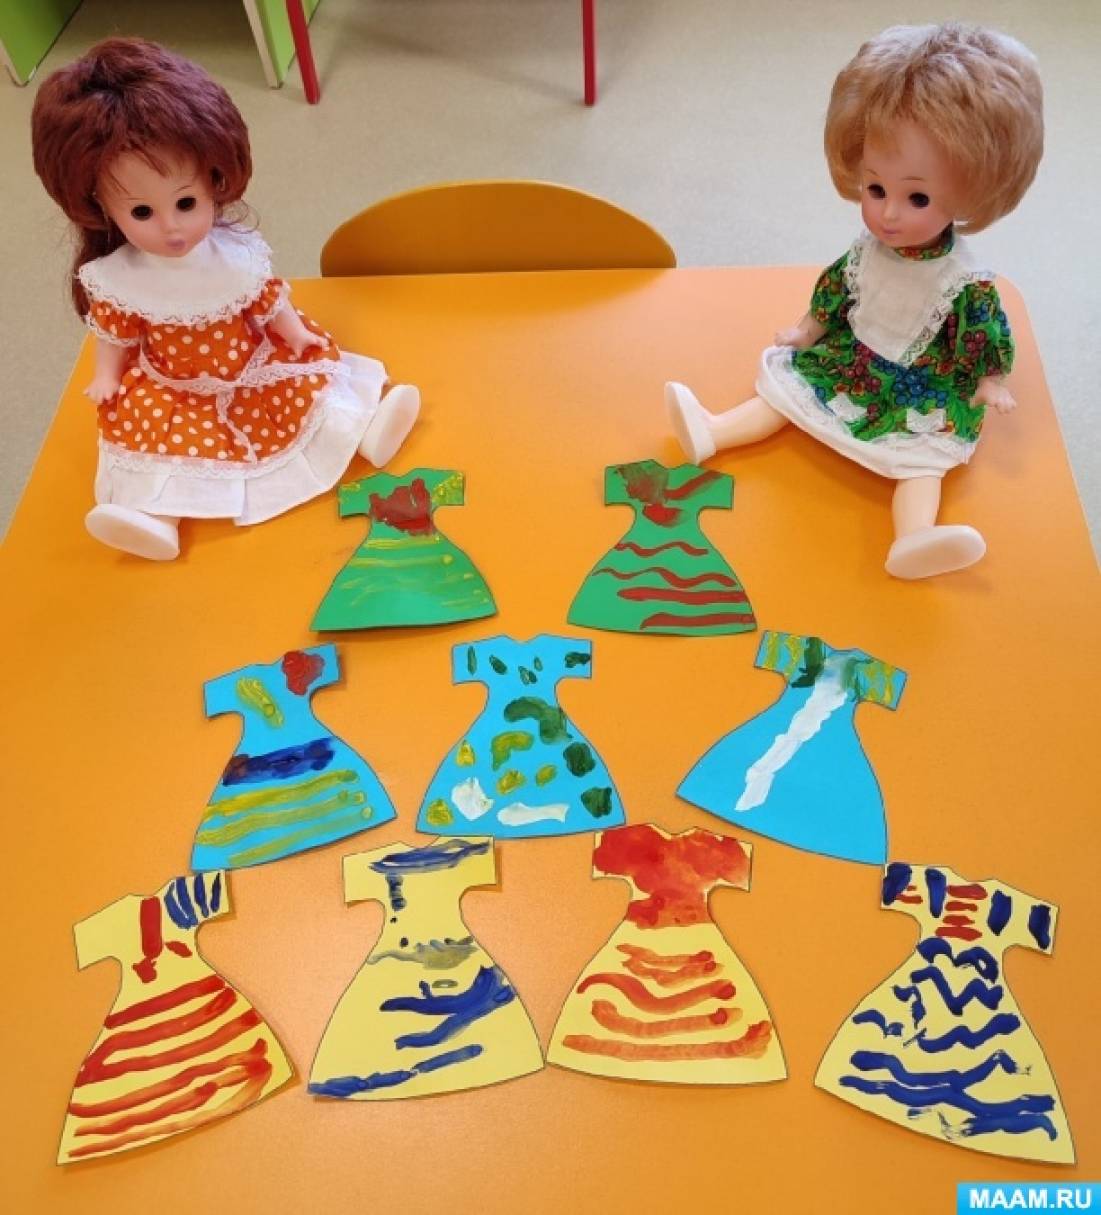 Конспект НОД по рисованию «Платье для кукол» во второй младшей группе